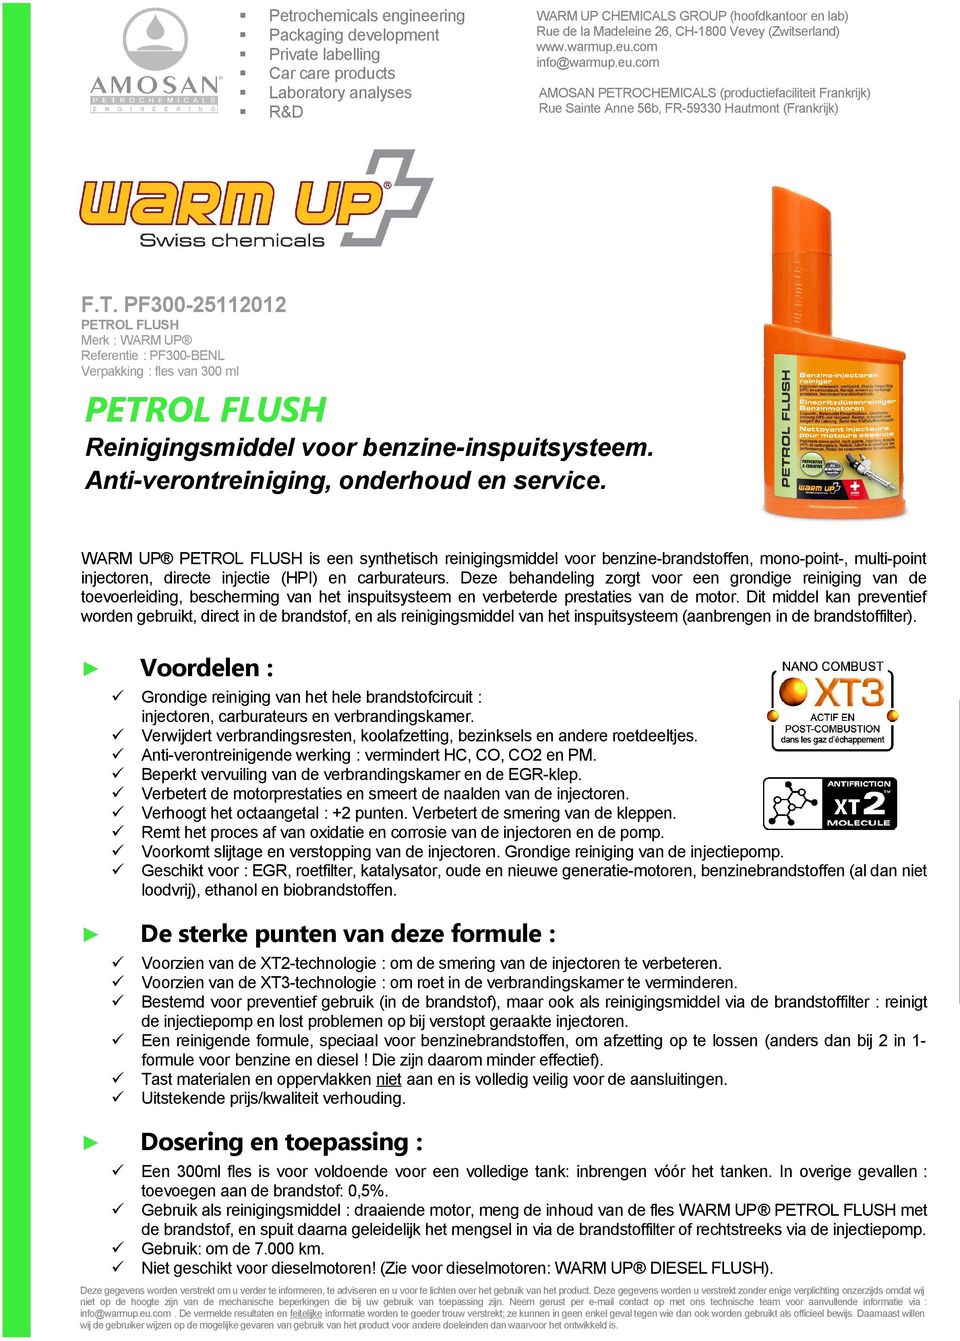 WARM UP PETROL FLUSH is een synthetisch reinigingsmiddel voor benzine-brandstoffen, mono-point-, multi-point injectoren, directe injectie (HPI) en carburateurs.